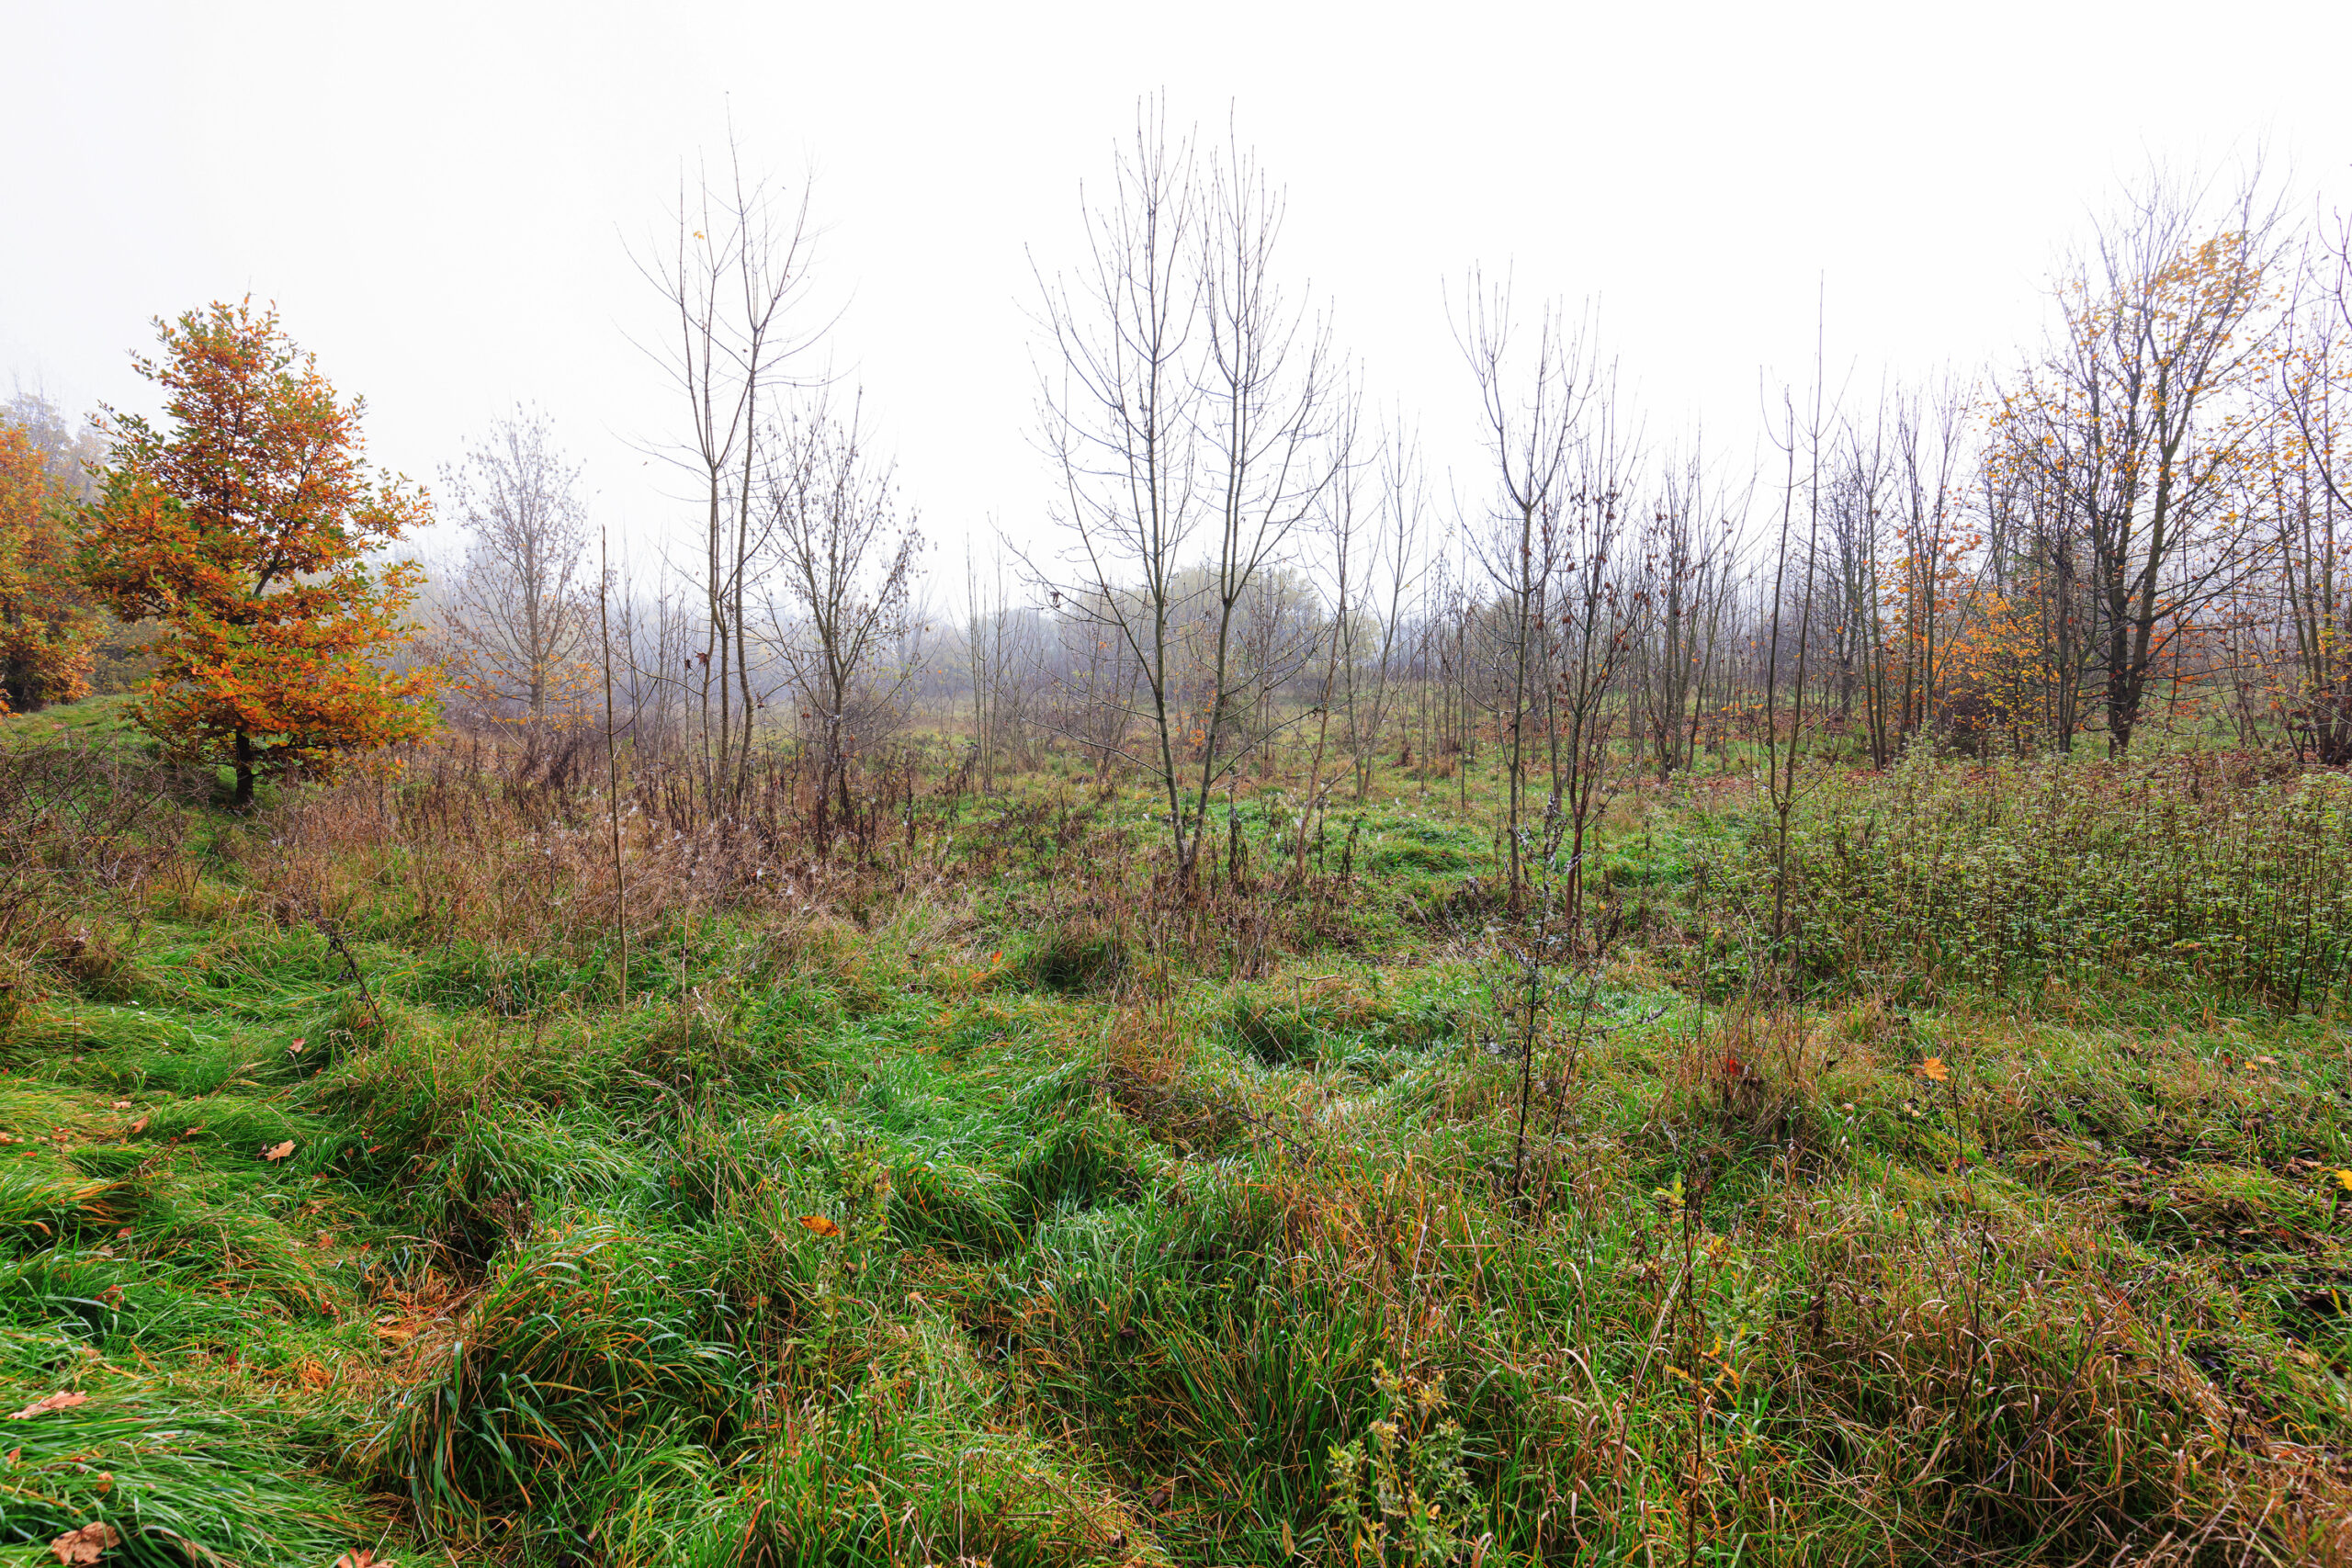 <h1>Hradiště – postupné zarůstání lokality (sukcese)</h1><br />
Na snímku je vidět neudržovaná travnatá plocha bývalého hradiště postupně zarůstající keři a stromy.